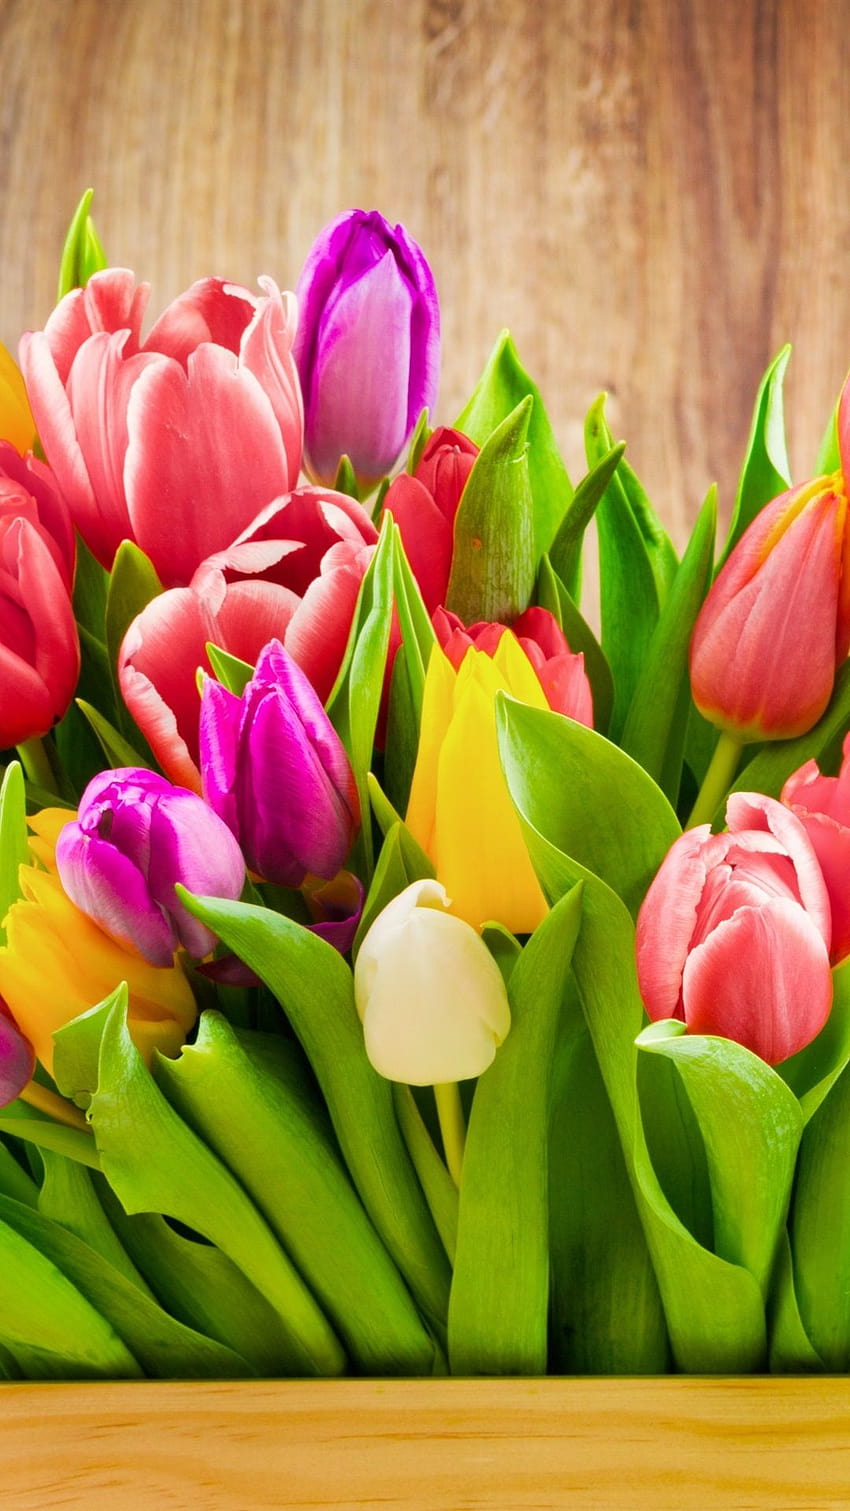 Banyak bunga tulip berwarna-warni, kotak 1080x1920 iPhone 8/7/6/6S Plus wallpaper ponsel HD